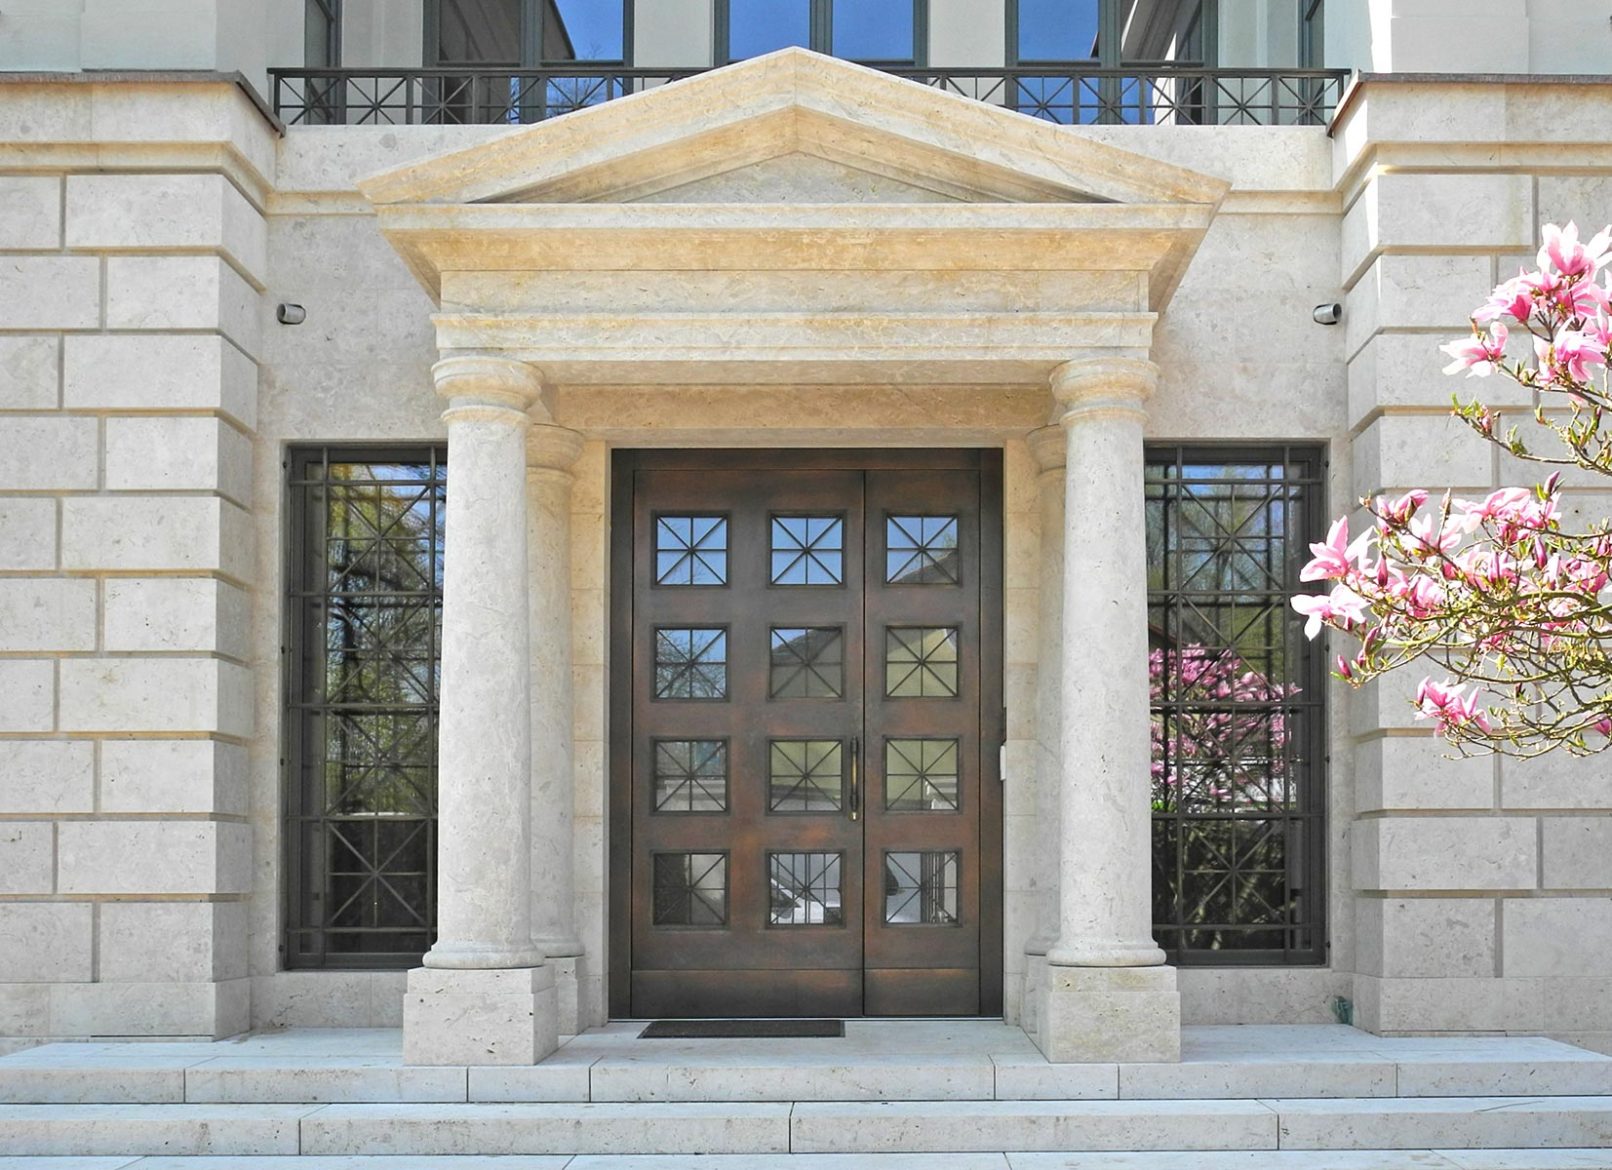 Eingangsportal mit Bronzeblech verkleidet und seitlichen Fenstergittern.